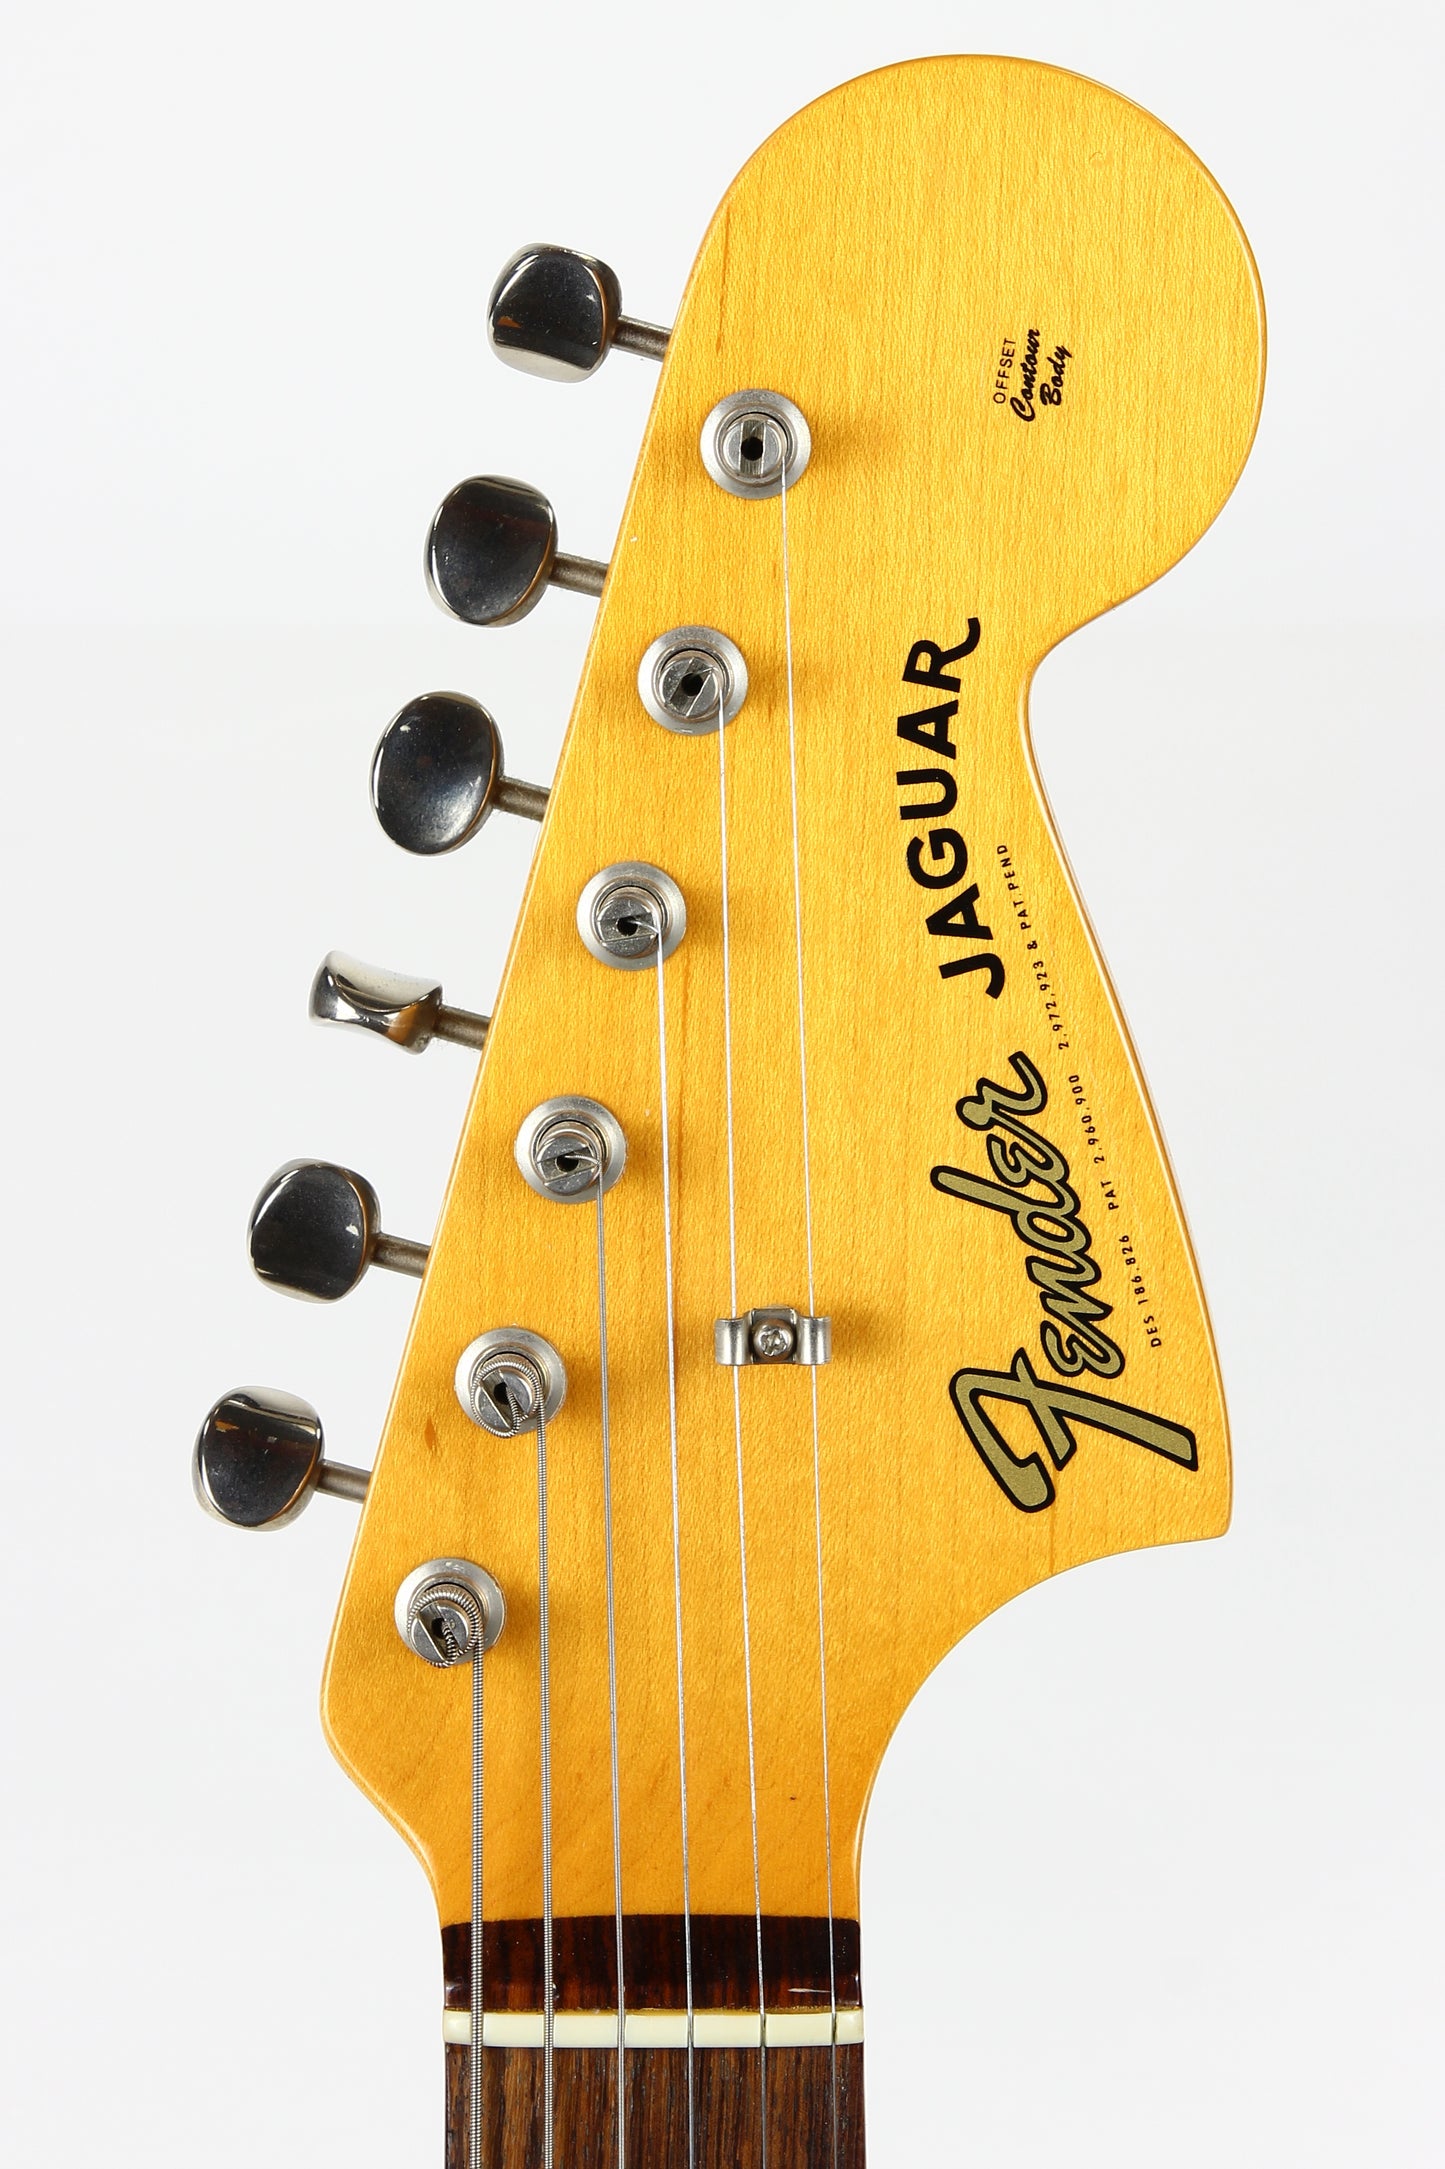 2005 Fender American Vintage '62 Jaguar AVRI 1962 Reissue - 3 Tone Sunburst, Made in USA